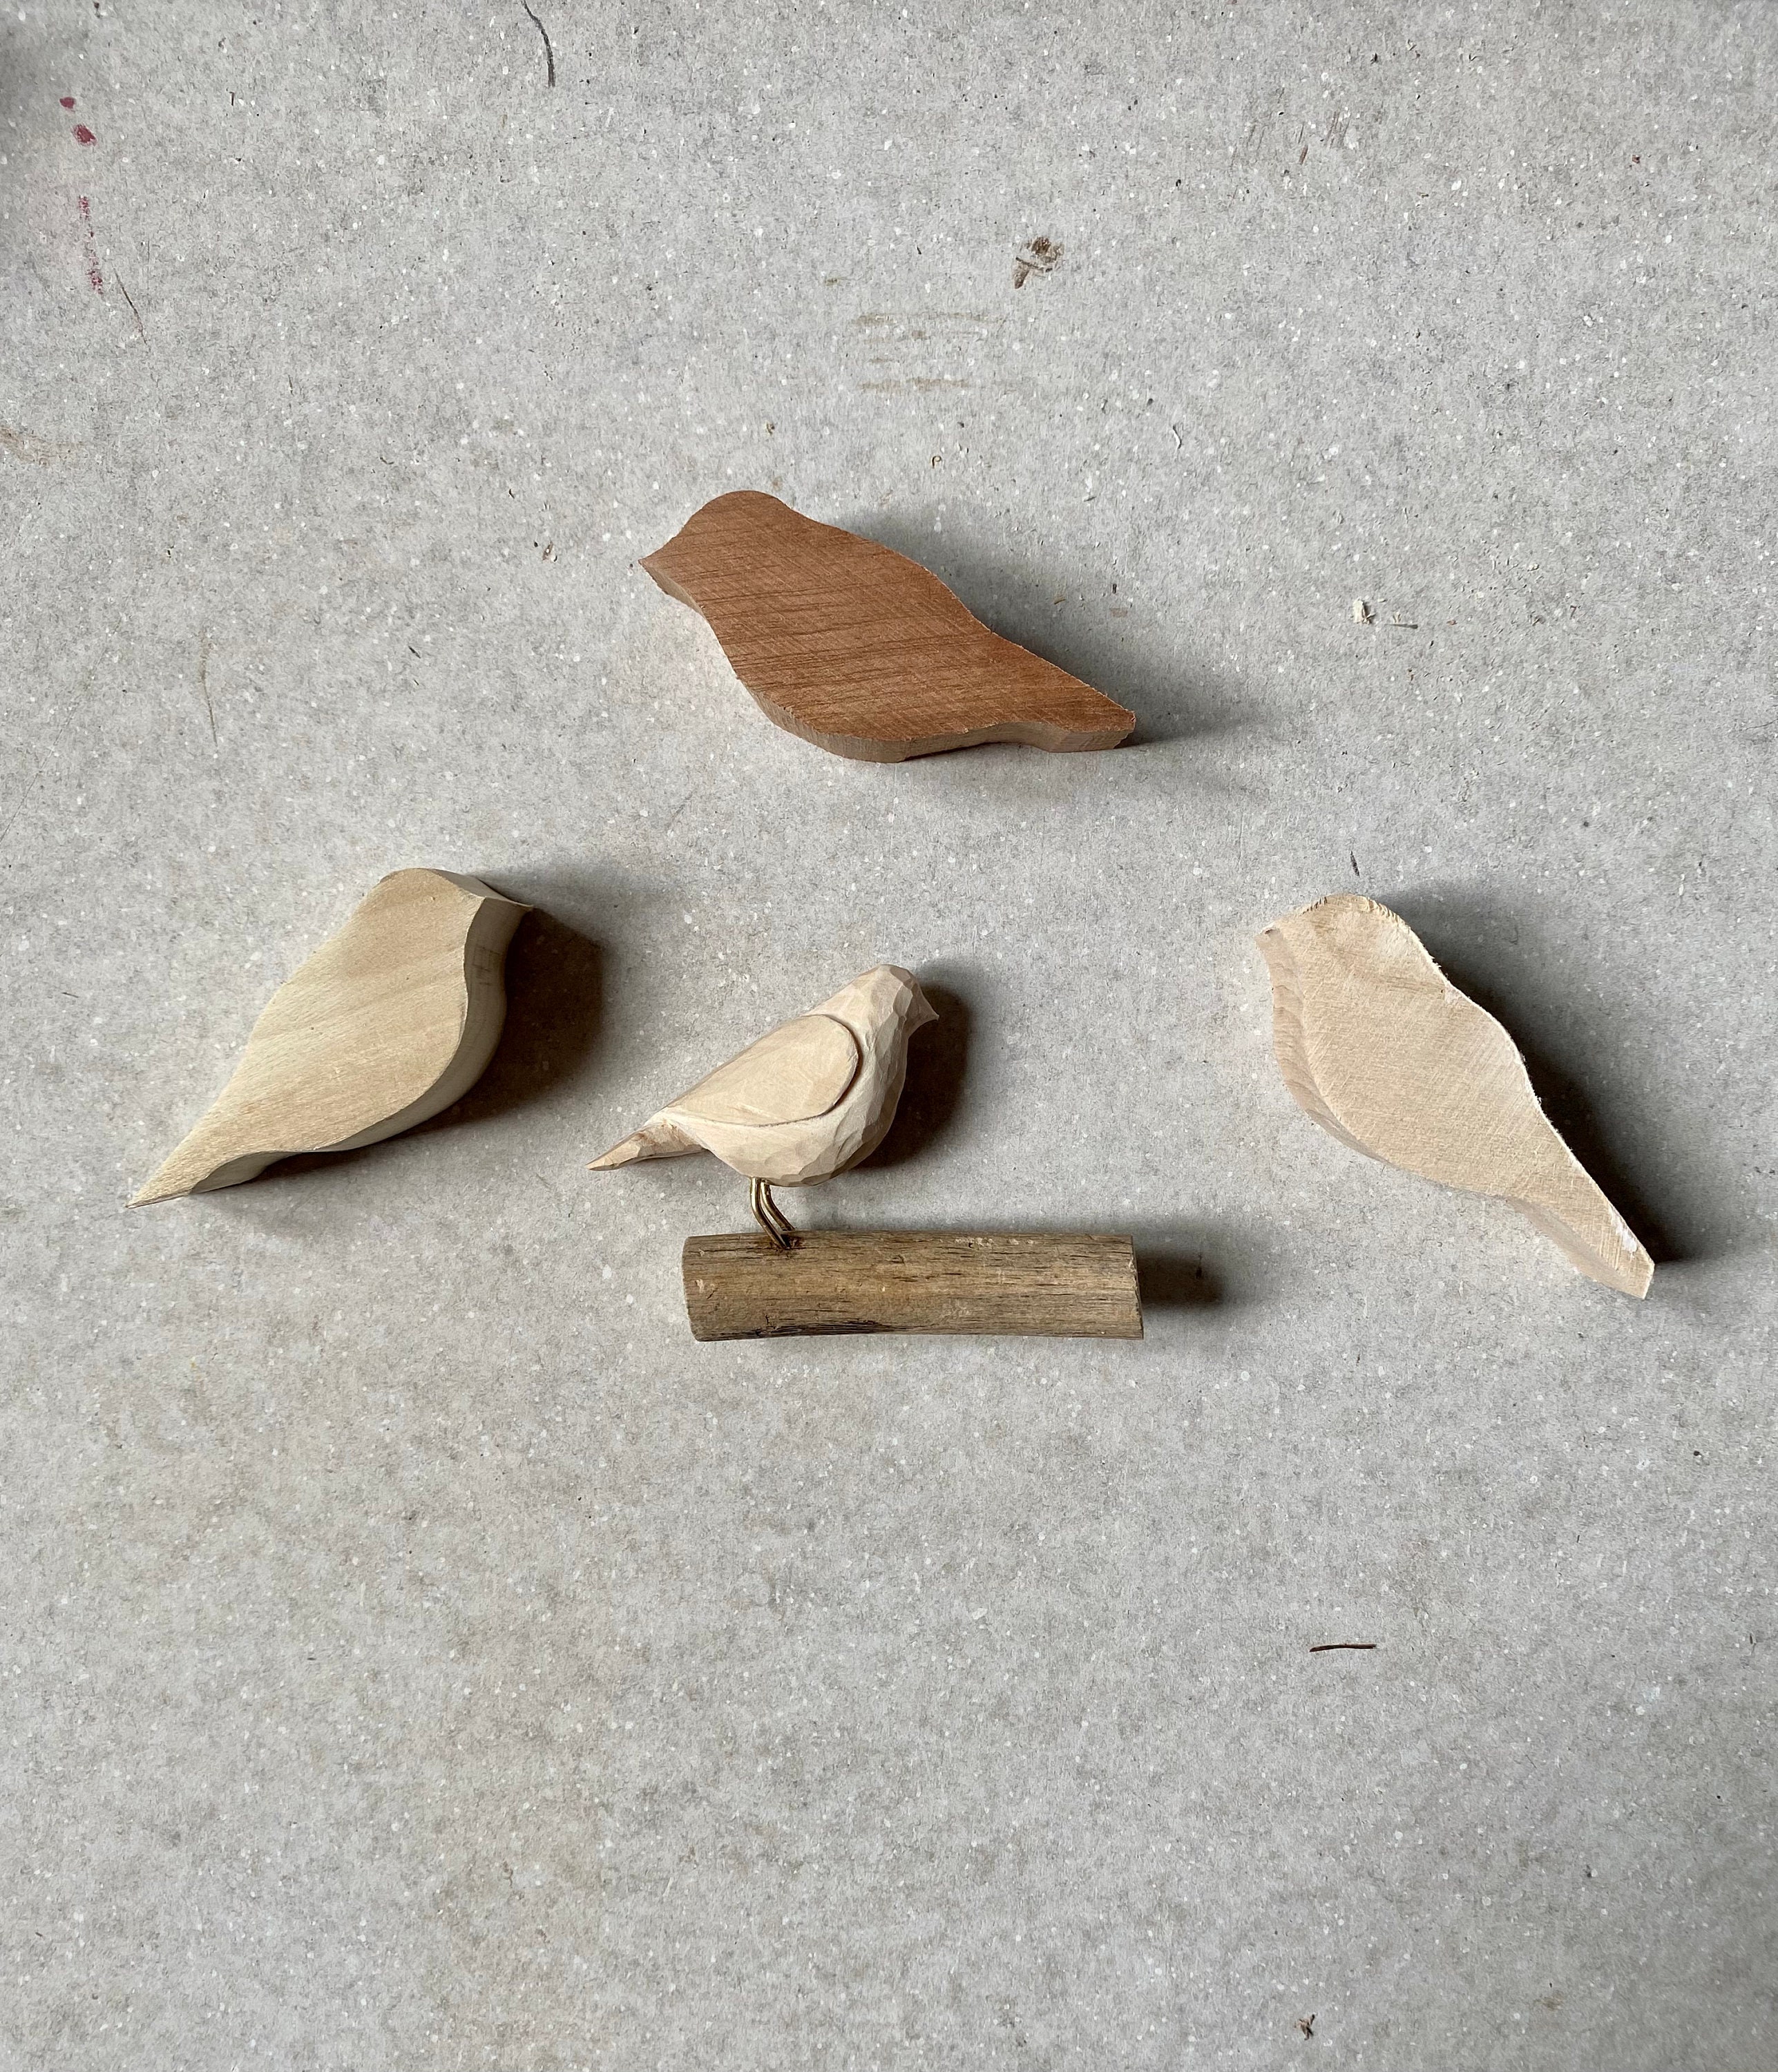 Beginner Whittling Kit Whittling Bird Kit Whittling Tool Bird Carving Kit  for Beginners Make Your Own Driftwood Art Bird Carving Kit 